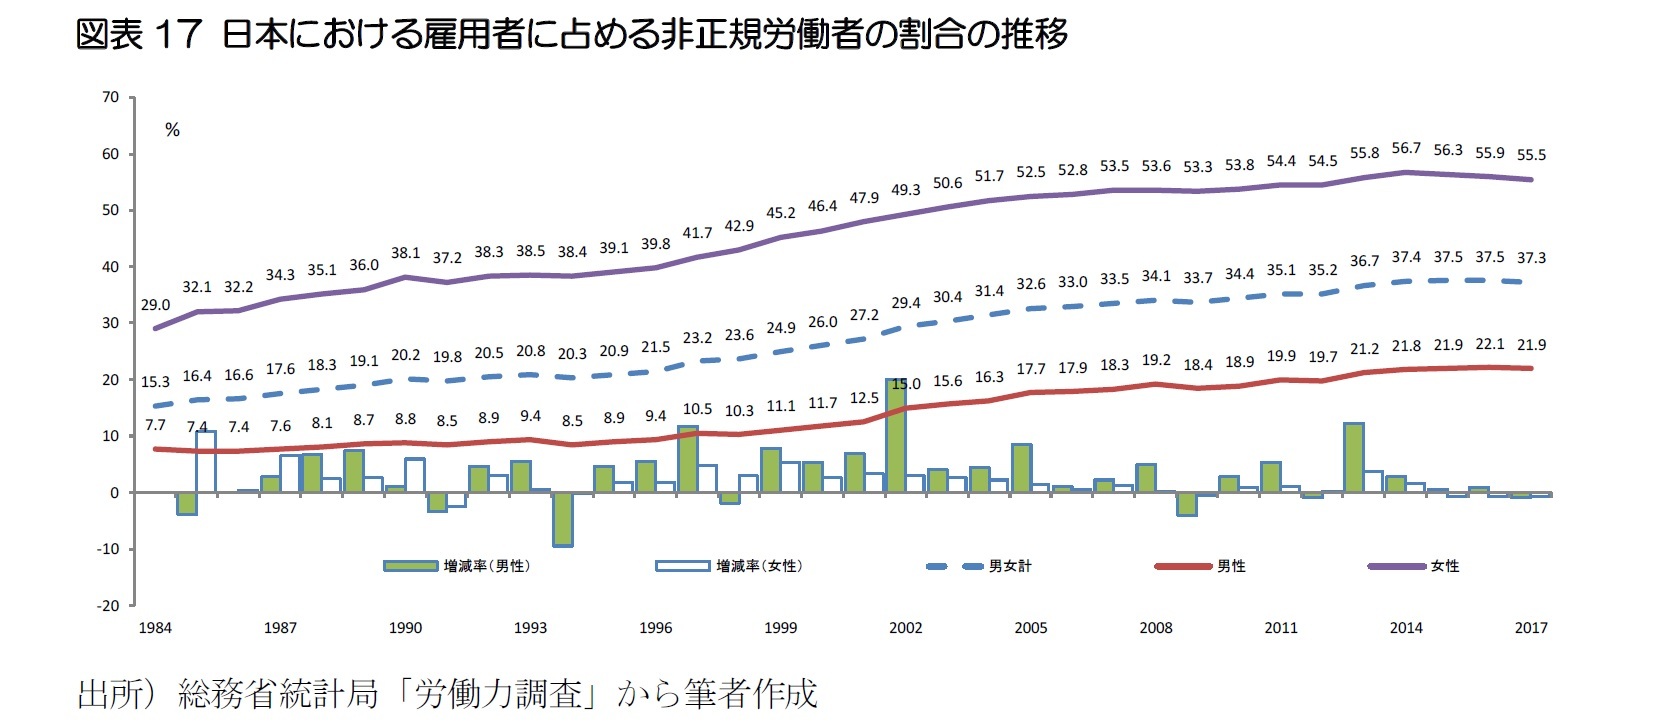 図表17 日本における雇用者に占める非正規労働者の割合の推移